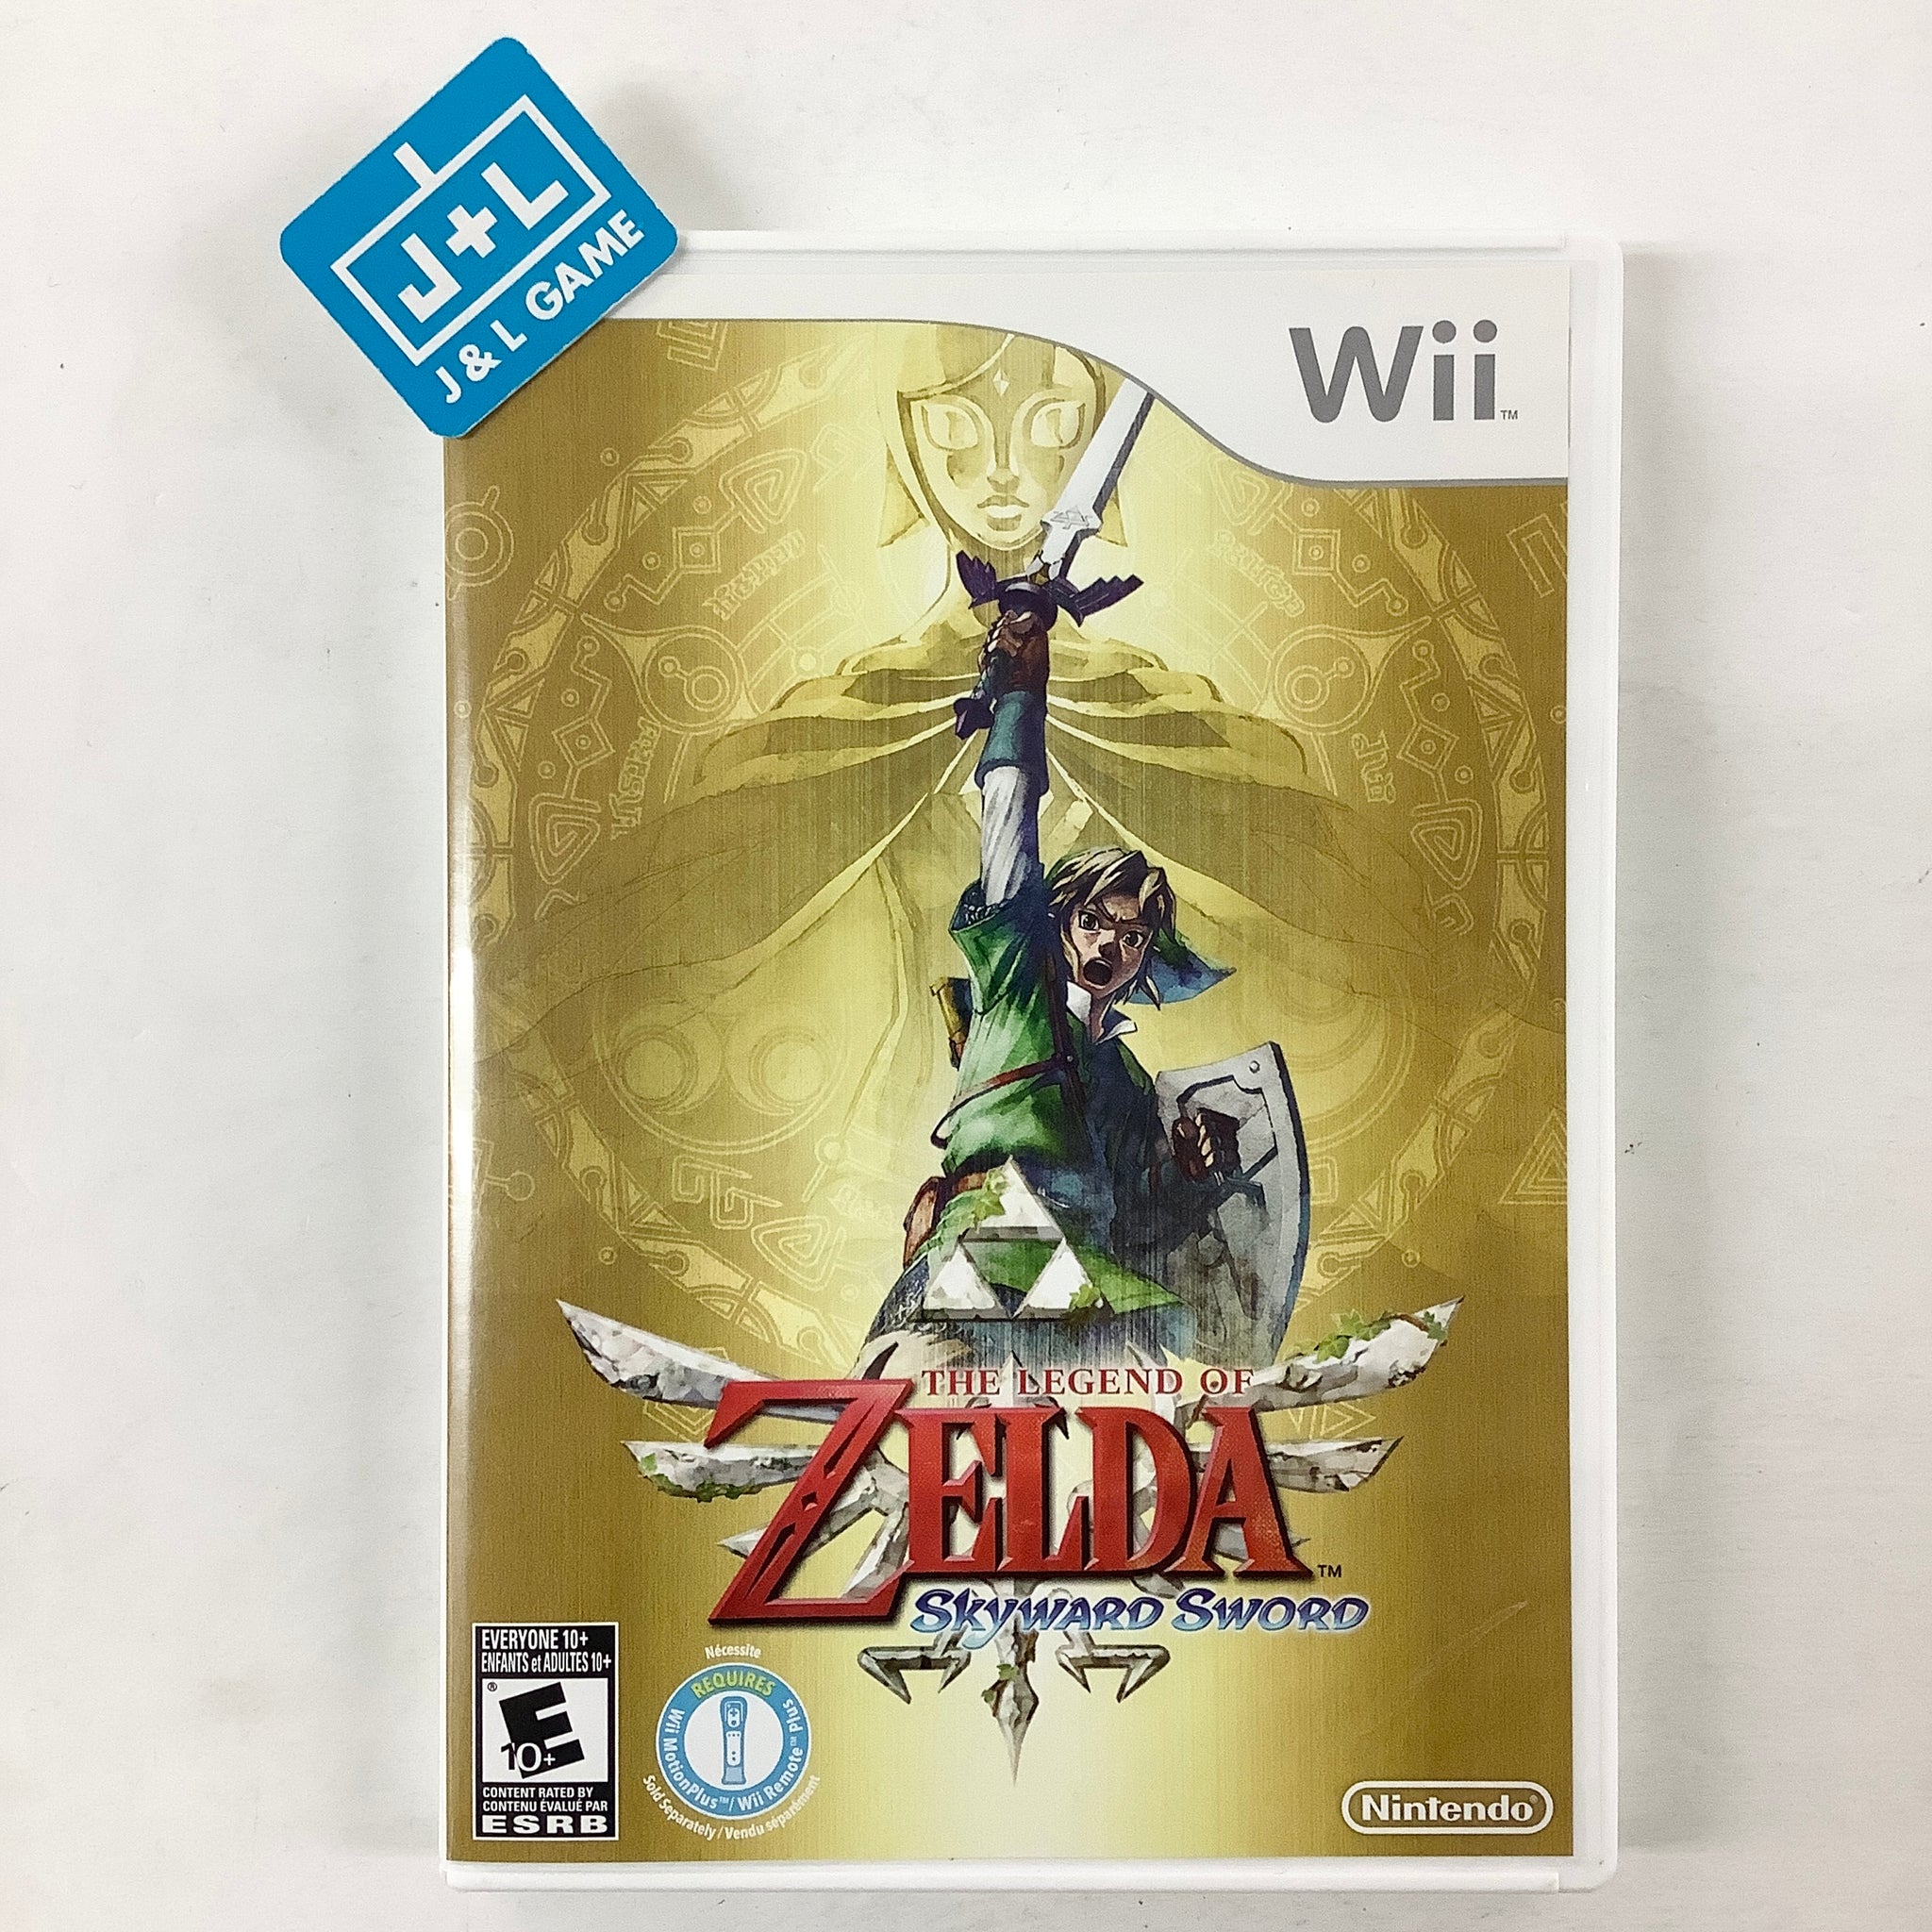 Nintendo Wii The Legend of Zelda Skyward Sword